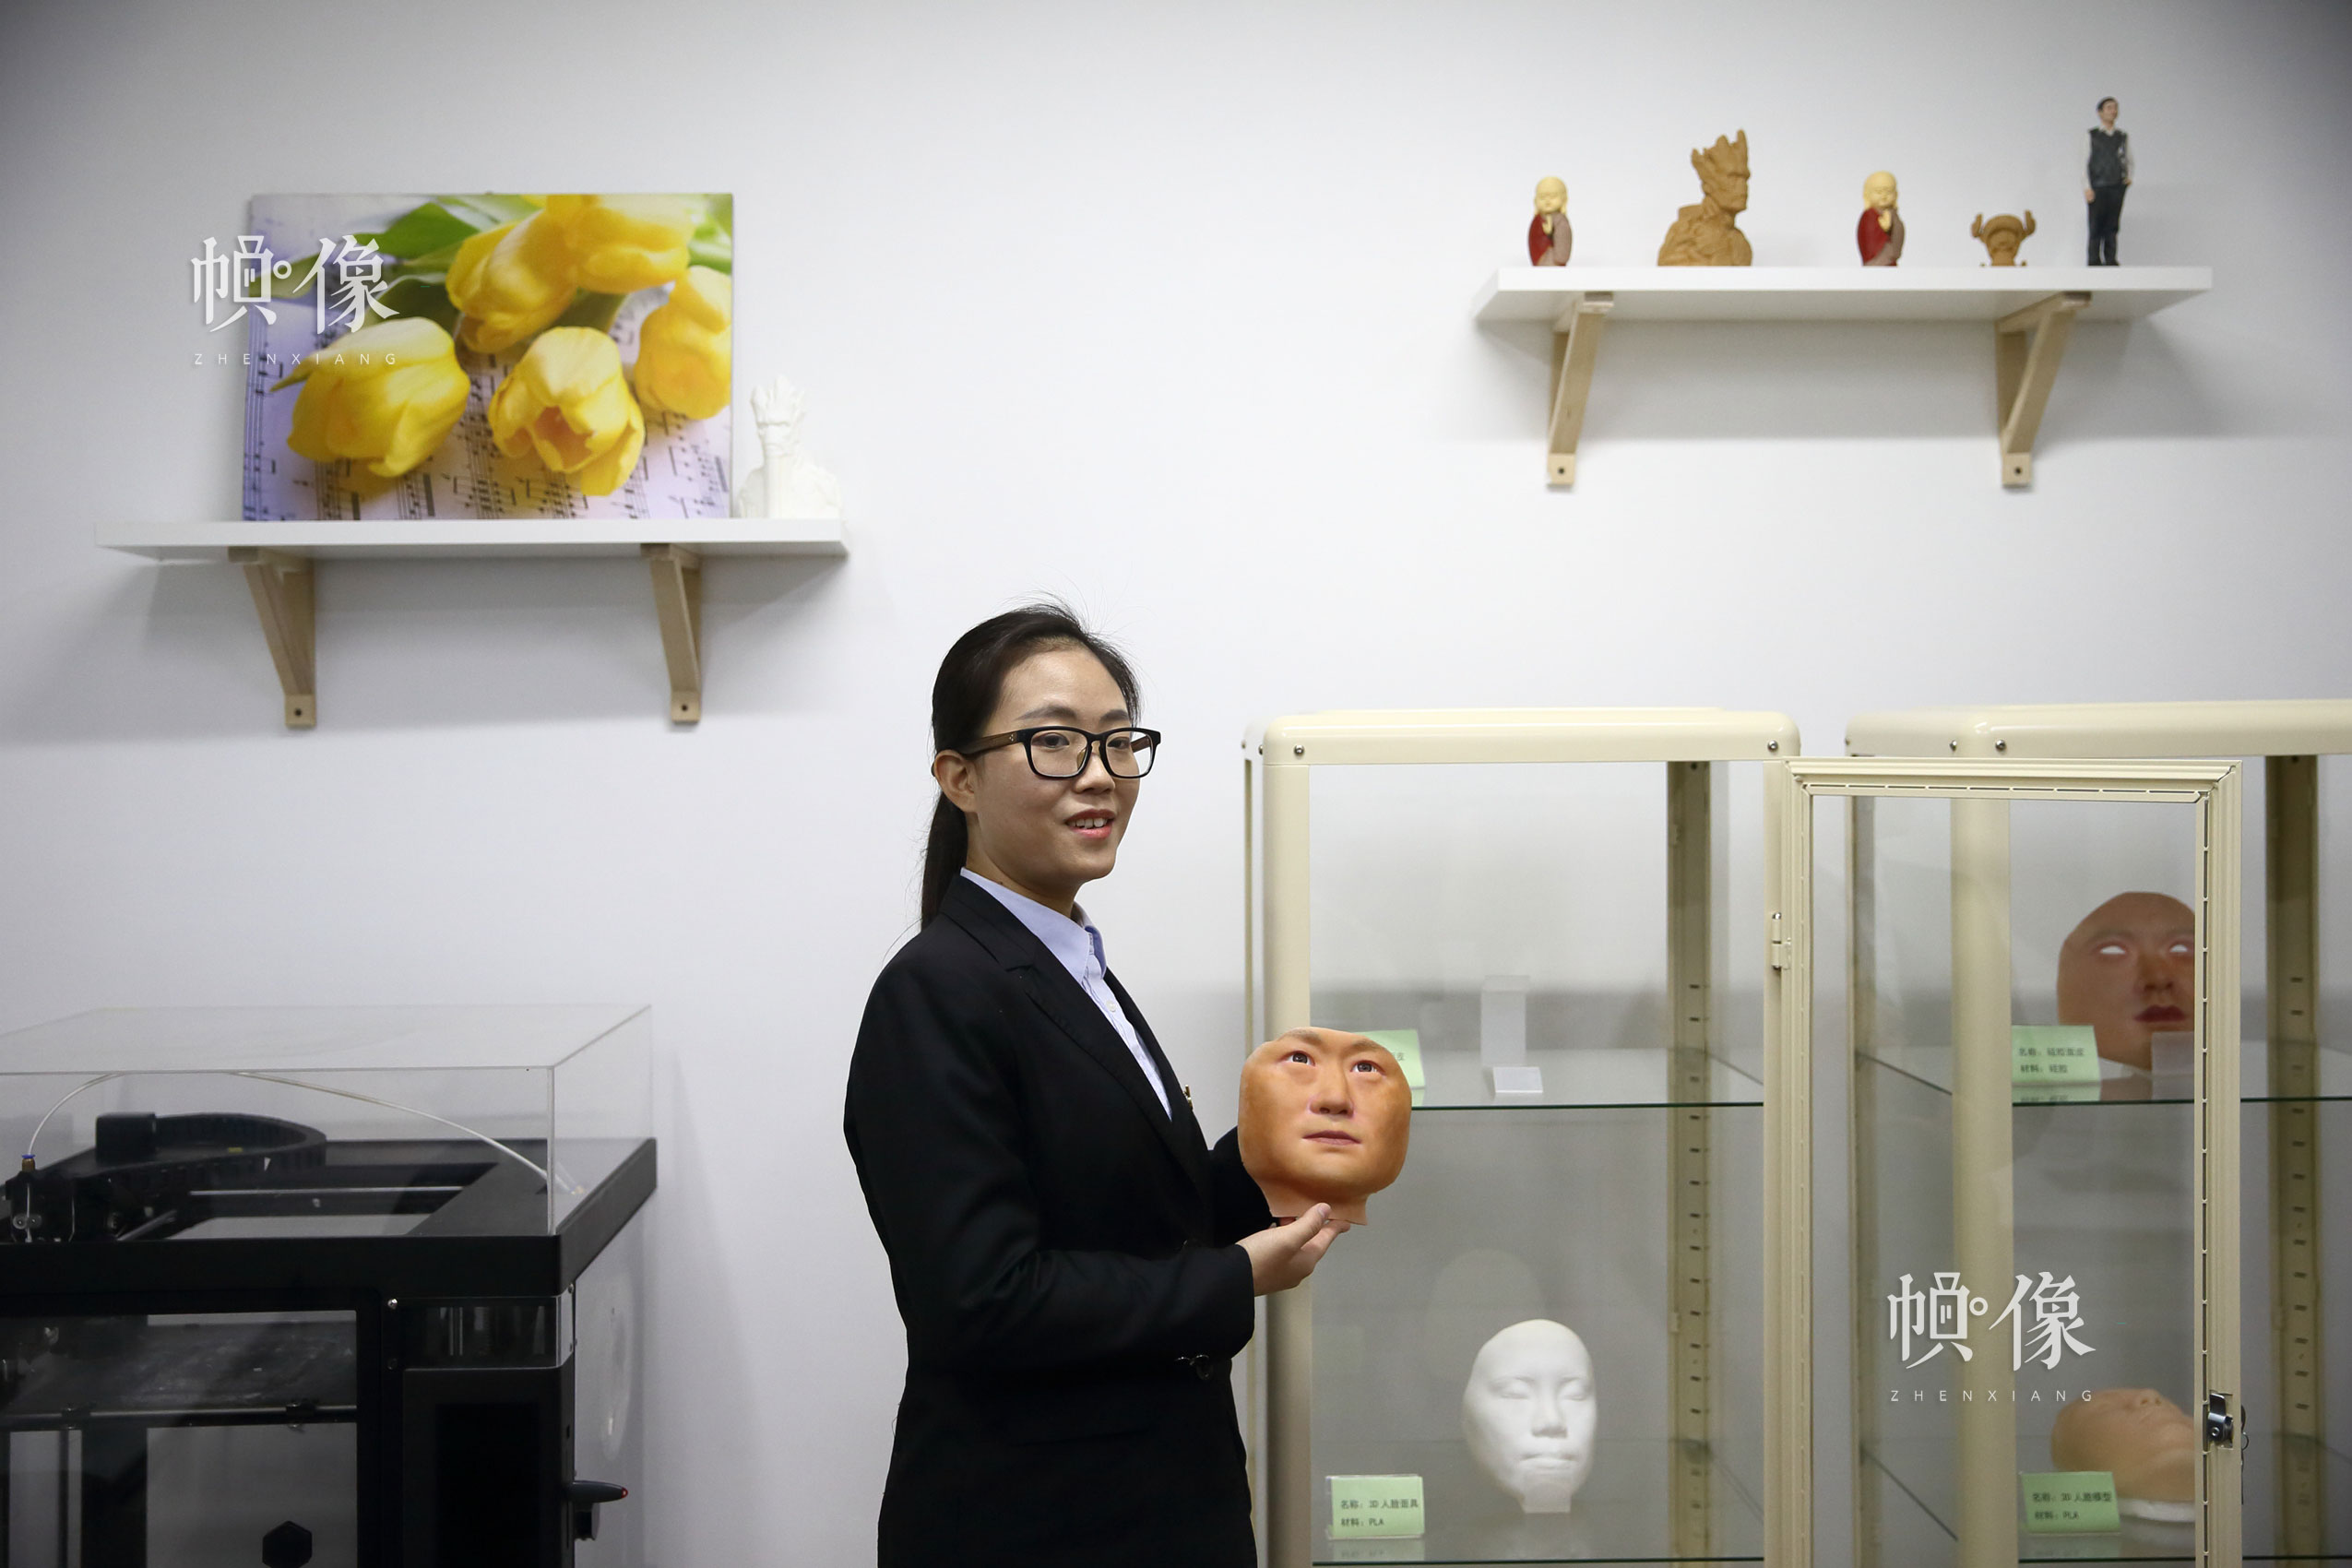 北京八寶山殯儀館遺體整容師曲傑展示通過3D列印遺體修復技術列印成品。中國網記者 陳維松 攝